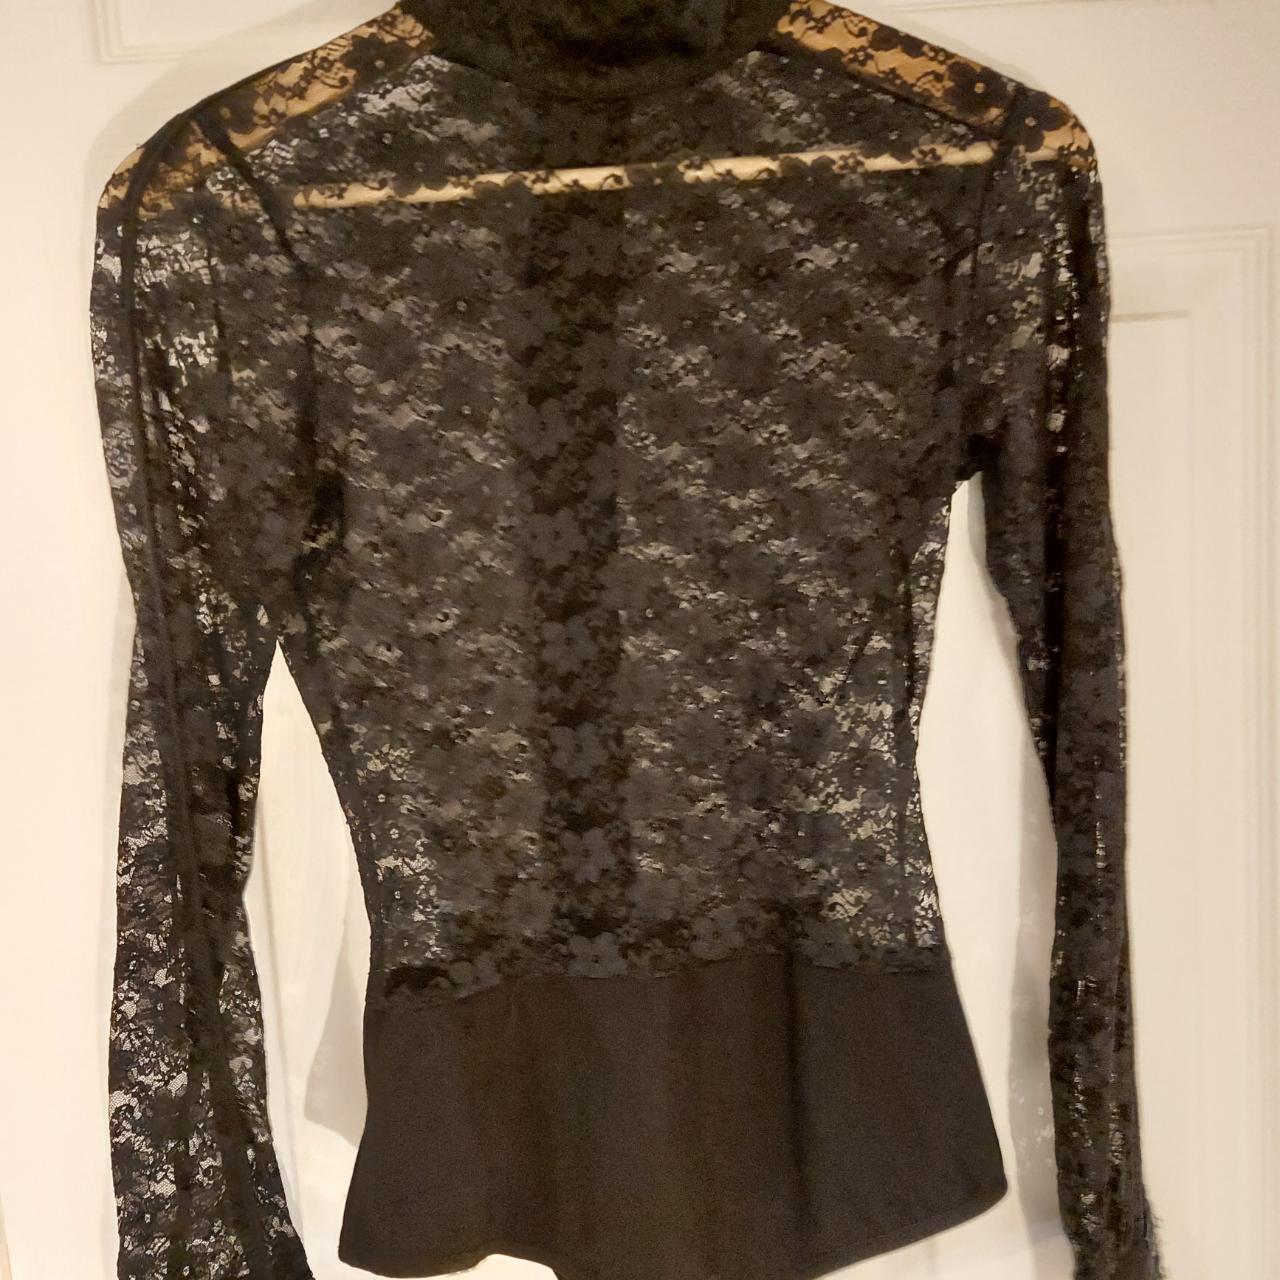 Long sleeve lace leotard bodysuit from Maniere de... - Depop